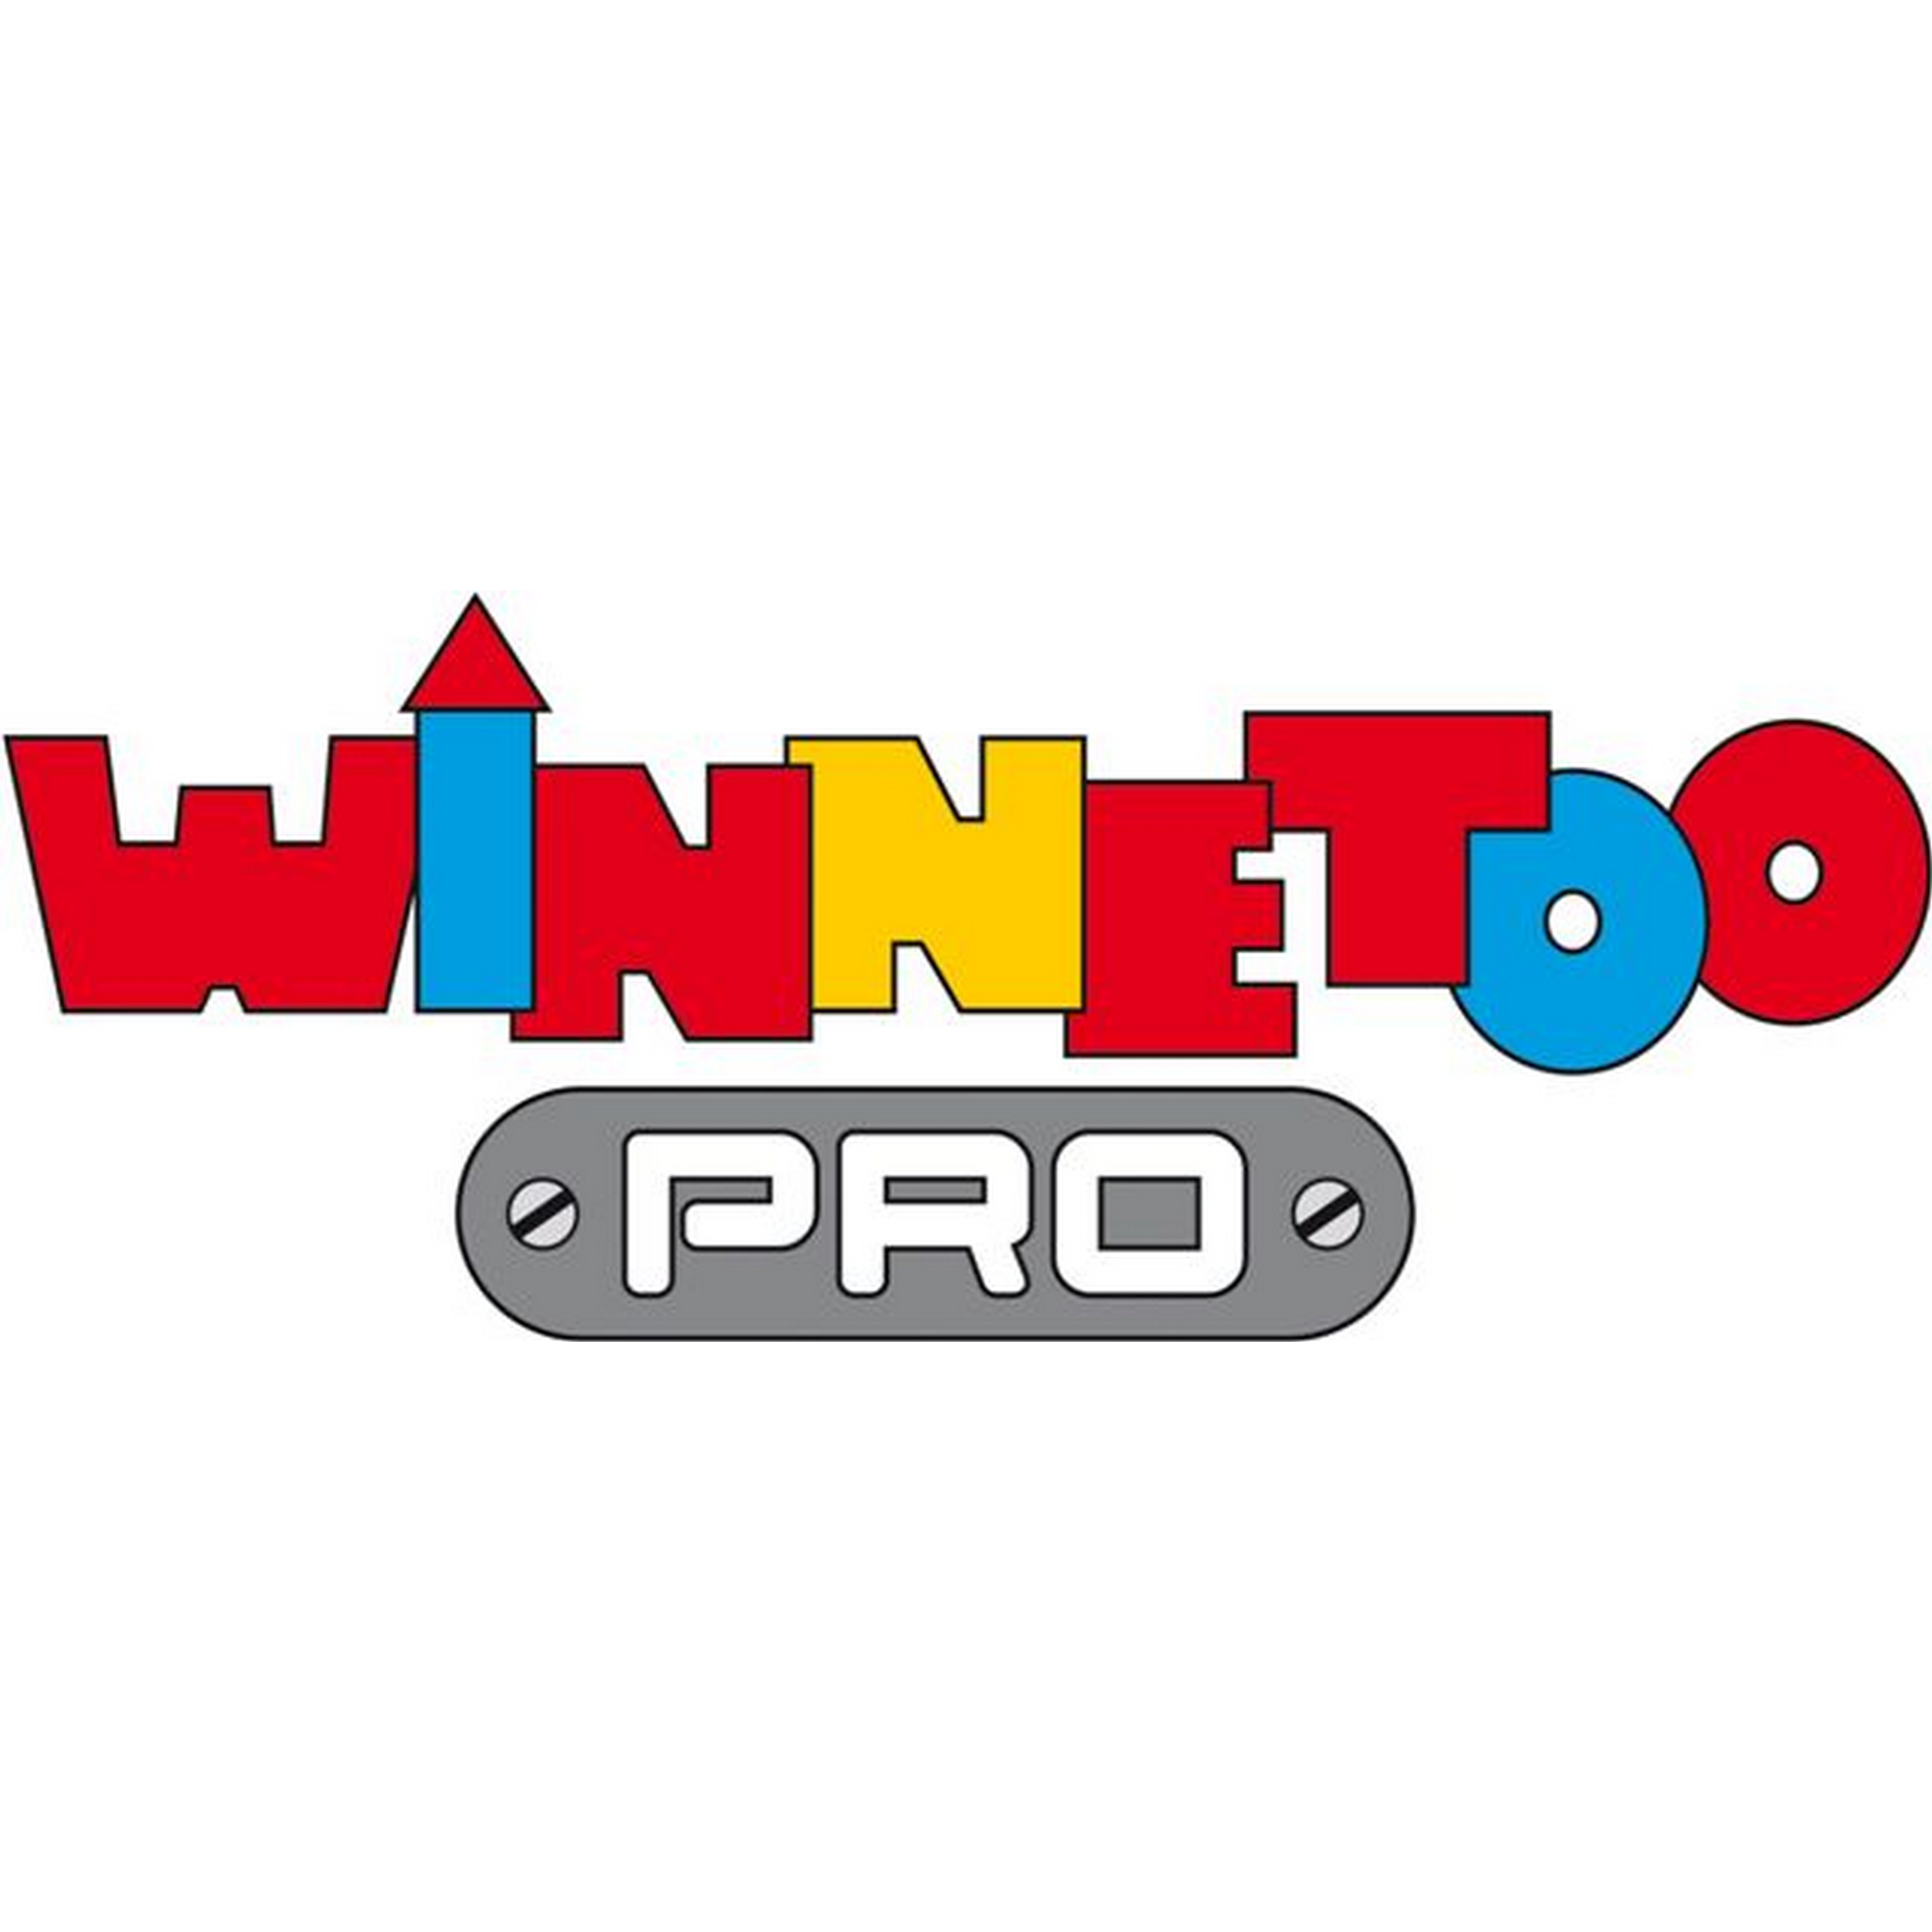 Kunststoffrutsche 'Winnetoo Pro' grün 233 x 75 x 149 cm, ohne Zubehör + product picture